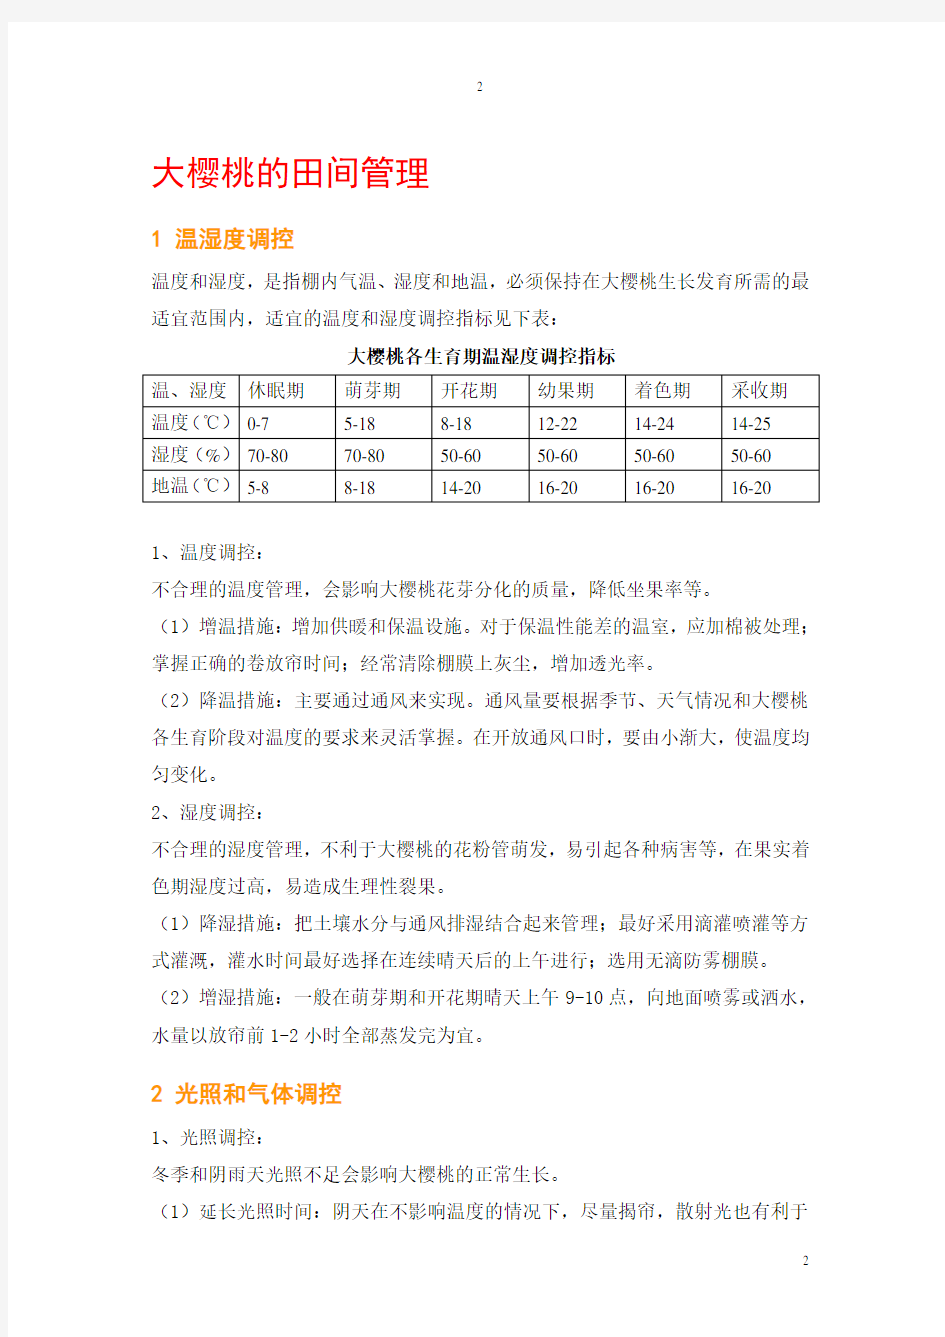 大樱桃温室栽培技术手册精简版201408